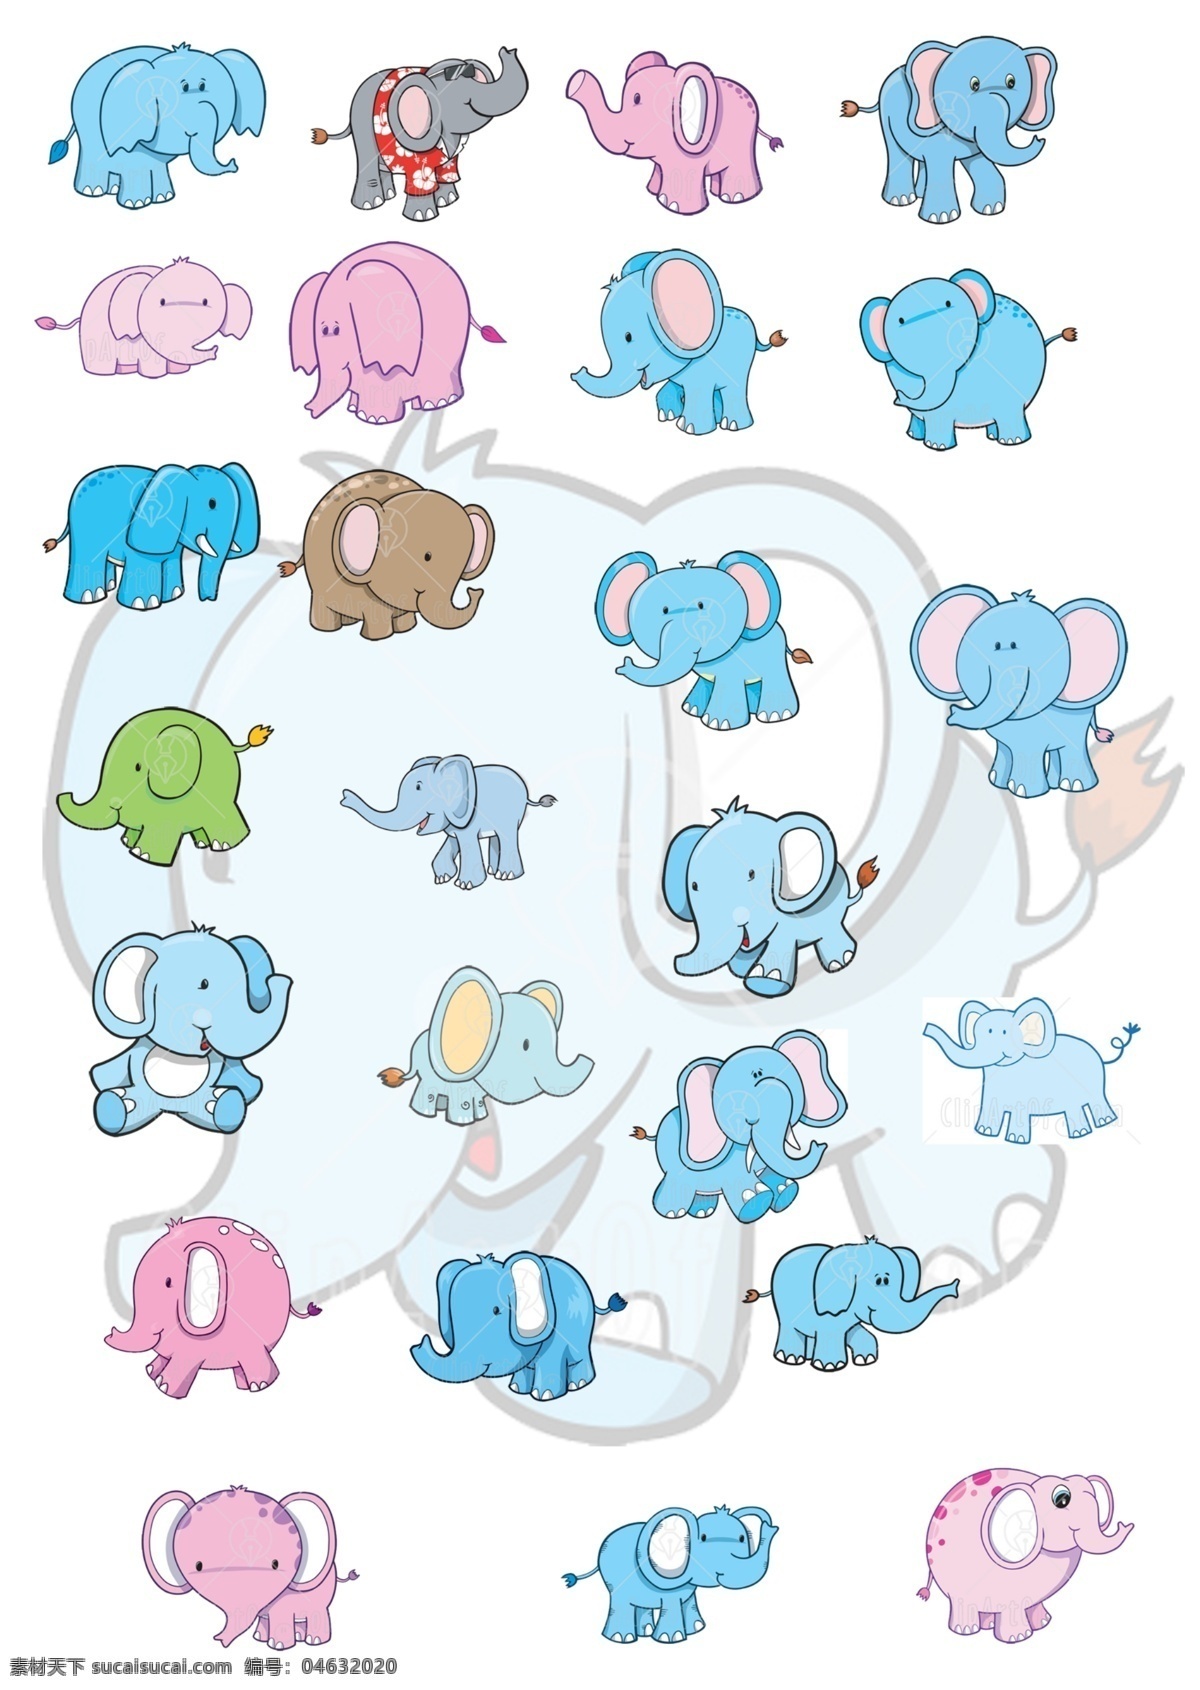 分层 大象 动物 卡通 卡通大象 可爱小动物 玩具 模板下载 小孩 卡通形像 大象形像 源文件 psd源文件